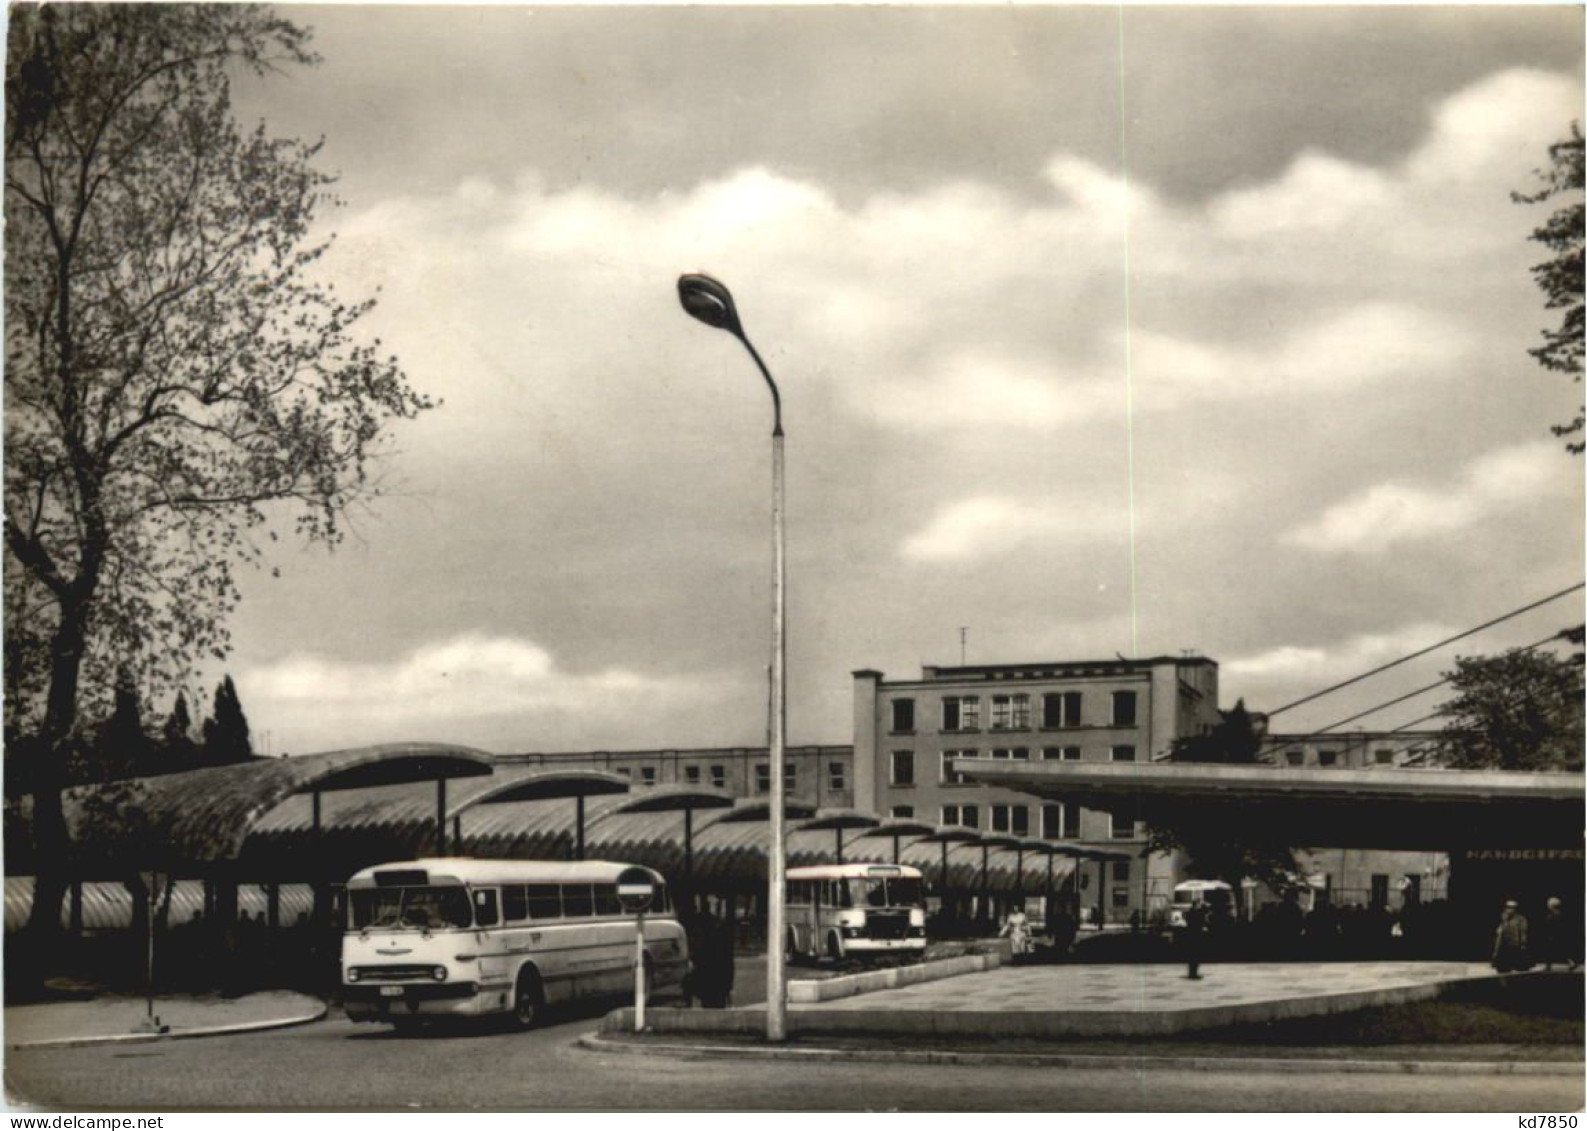 Karl-Marx-Stadt - Omnibusbahnhof - Chemnitz (Karl-Marx-Stadt 1953-1990)